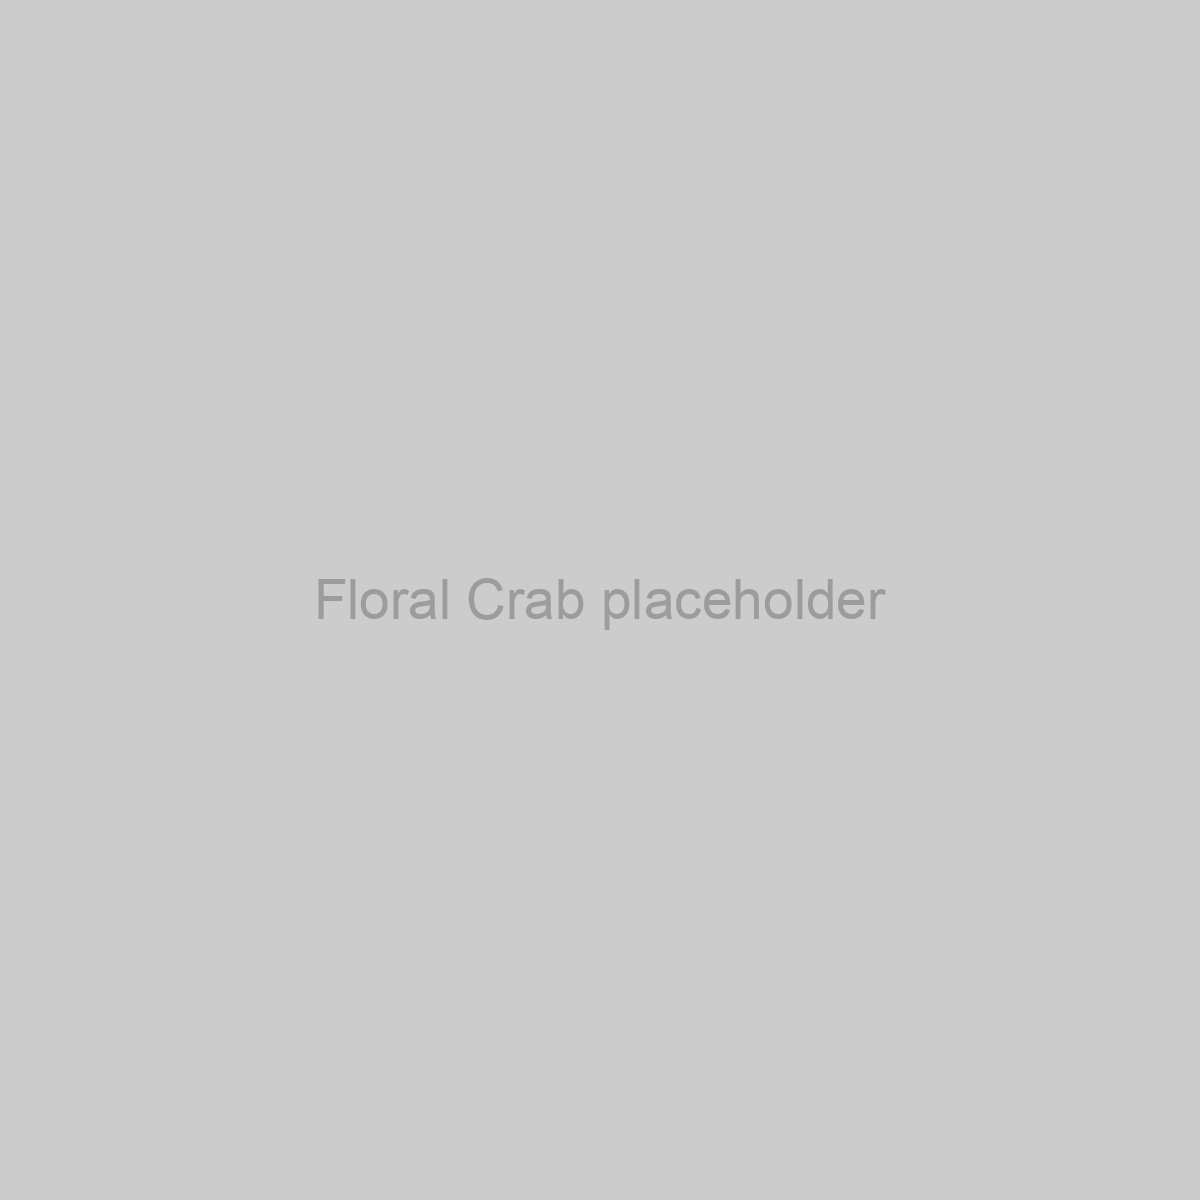 Floral Crab Placeholder Image